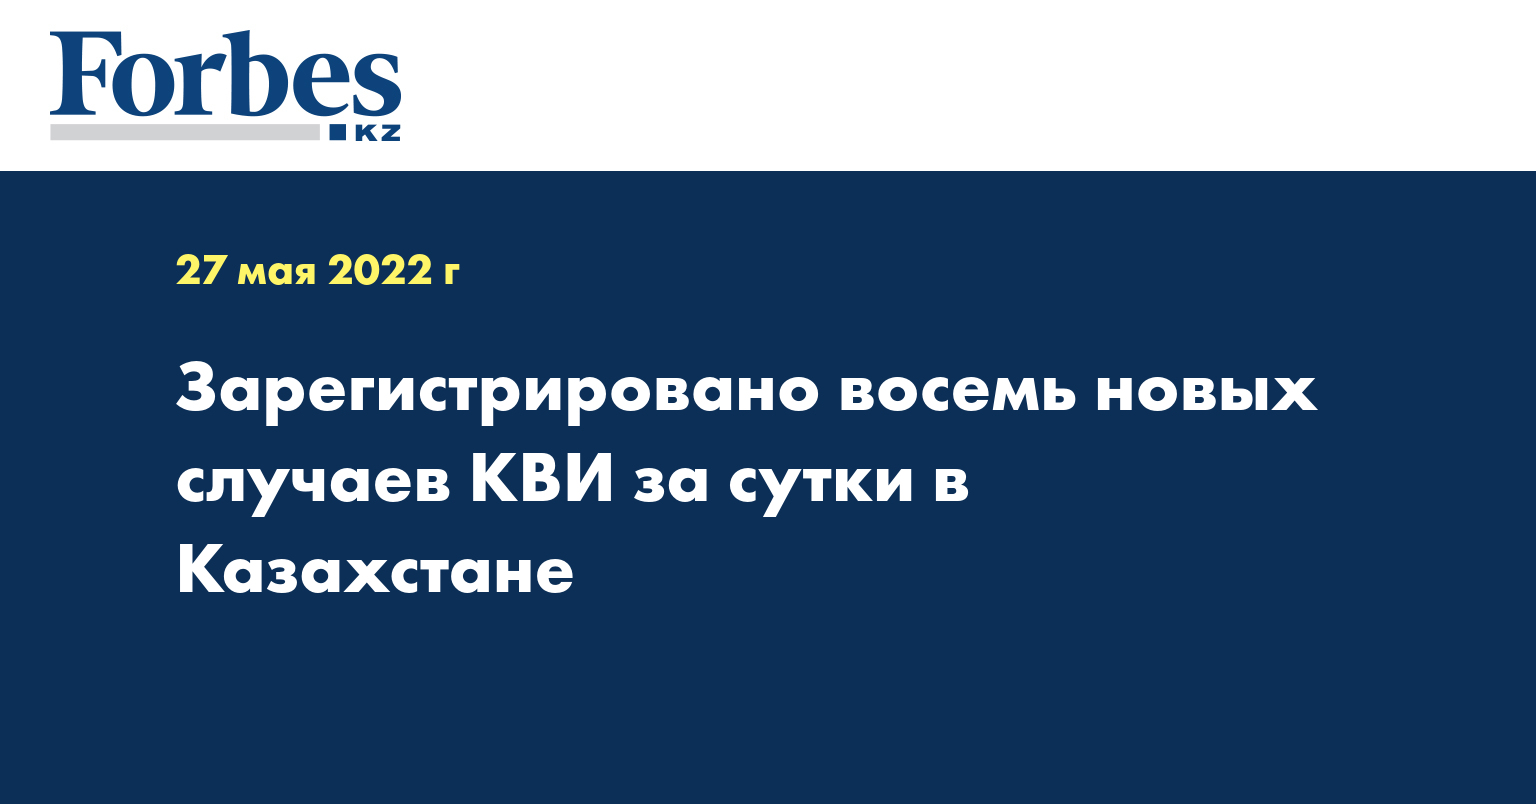 Зарегистрировано восемь новых случаев КВИ за сутки в Казахстане